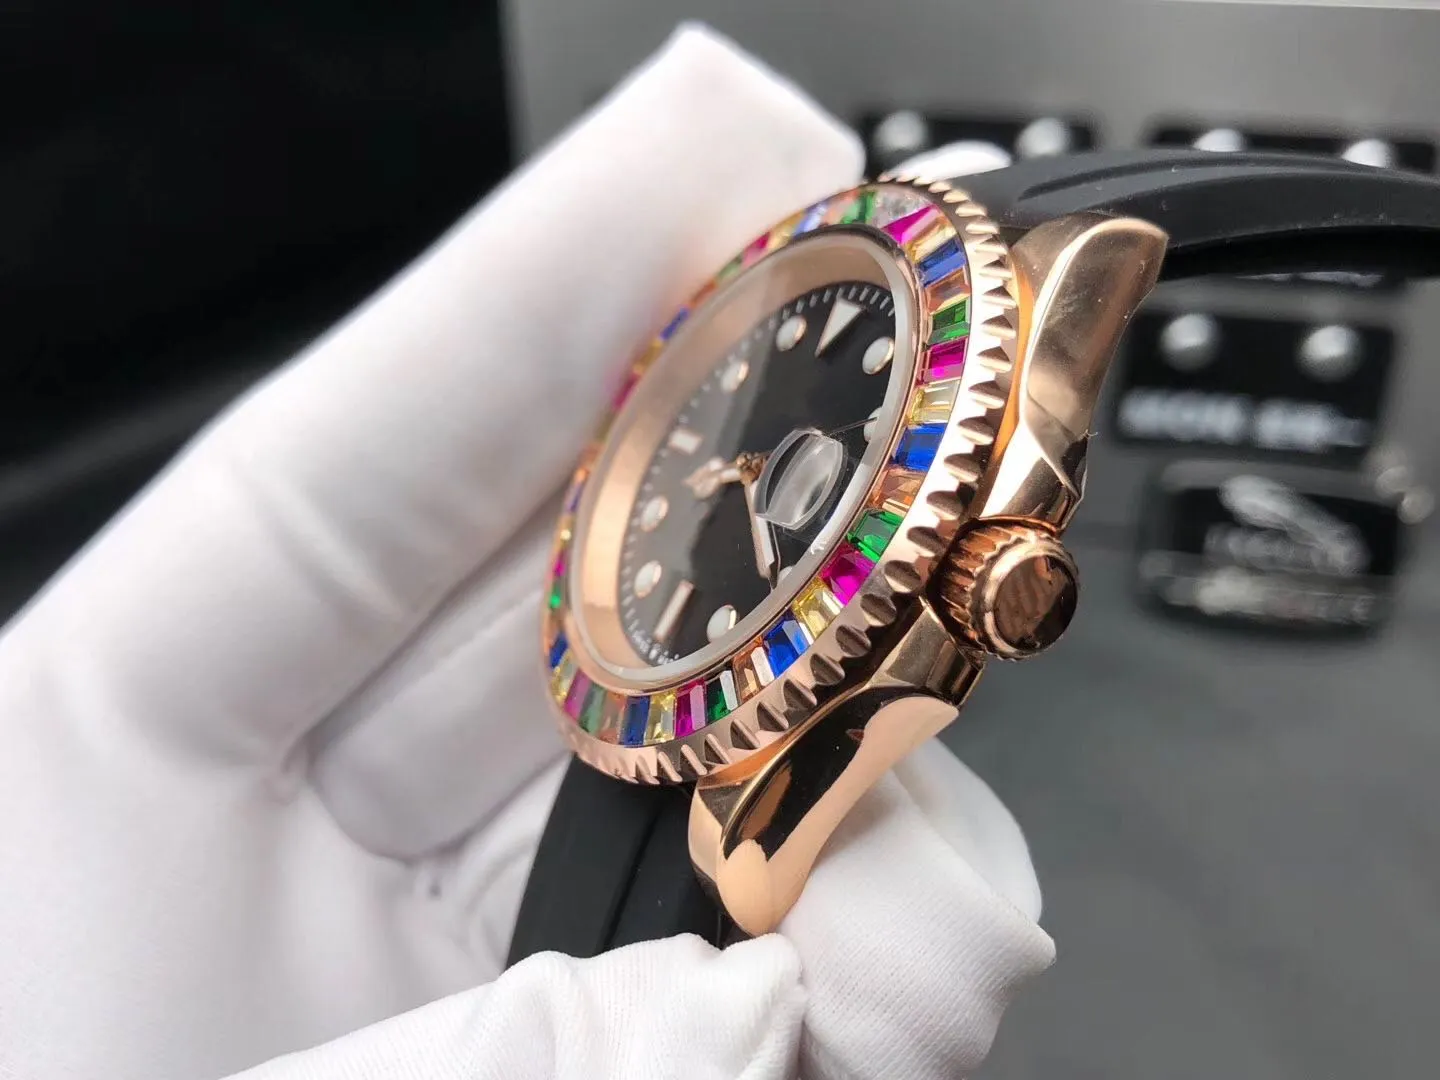 Super 43 montre DE luxe Beijing 2813 uurwerk automatisch horloge 40 mm 13 mm geraffineerde stalen kast waterdicht 50 m Super lichtgevend298z